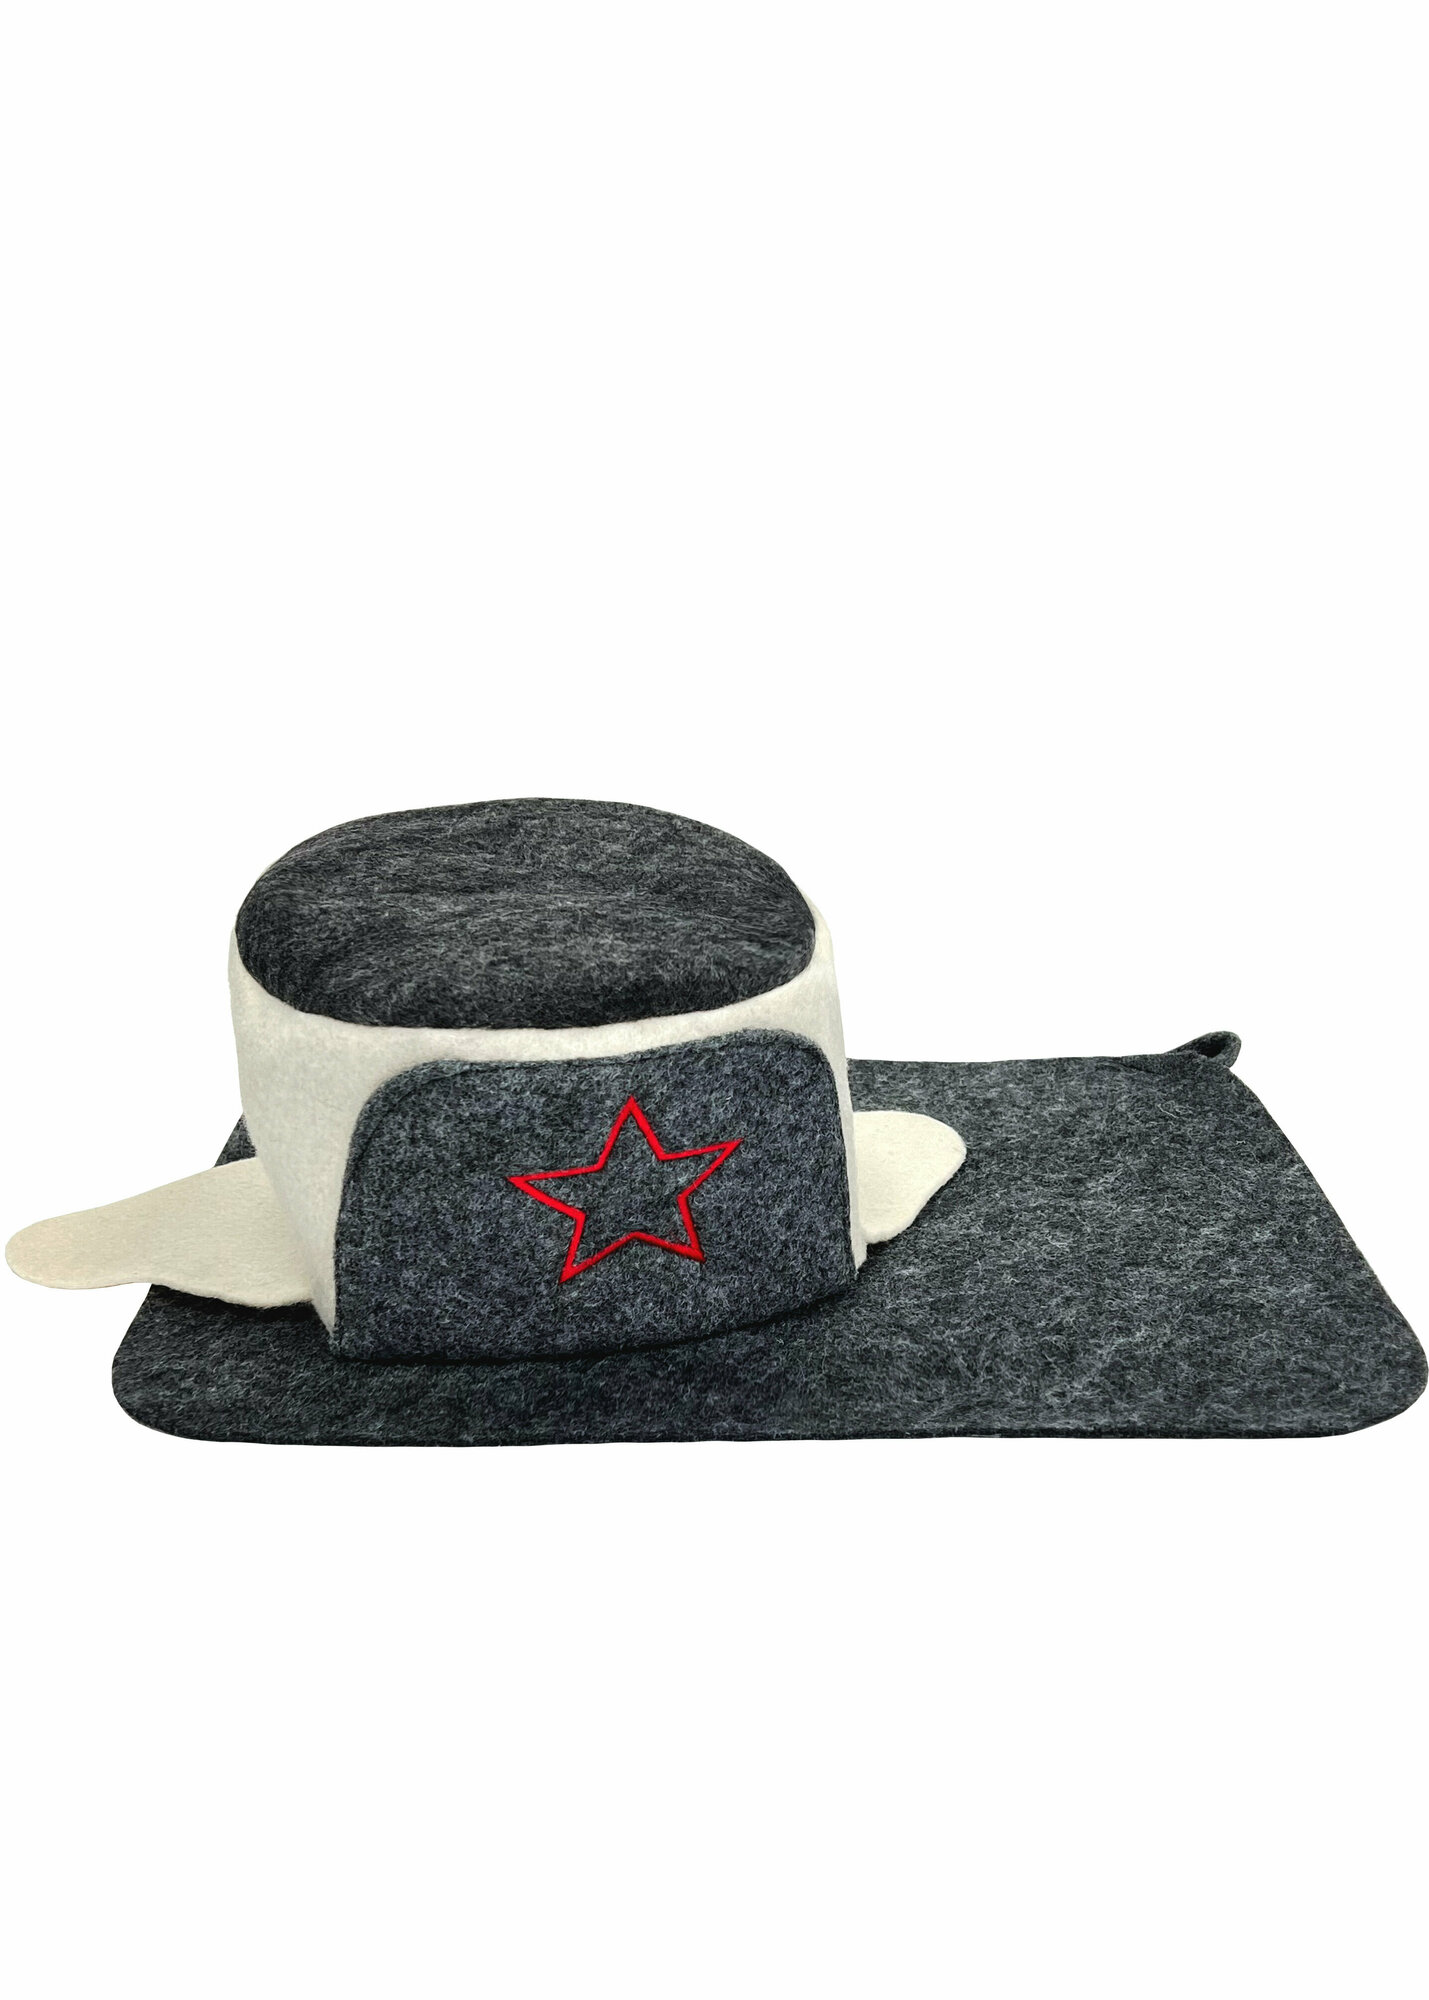 Банный набор шапка для бани и сауны, коврик лежак для бани и сауны, банные принадлежности, набор для бани мужской подарочный.